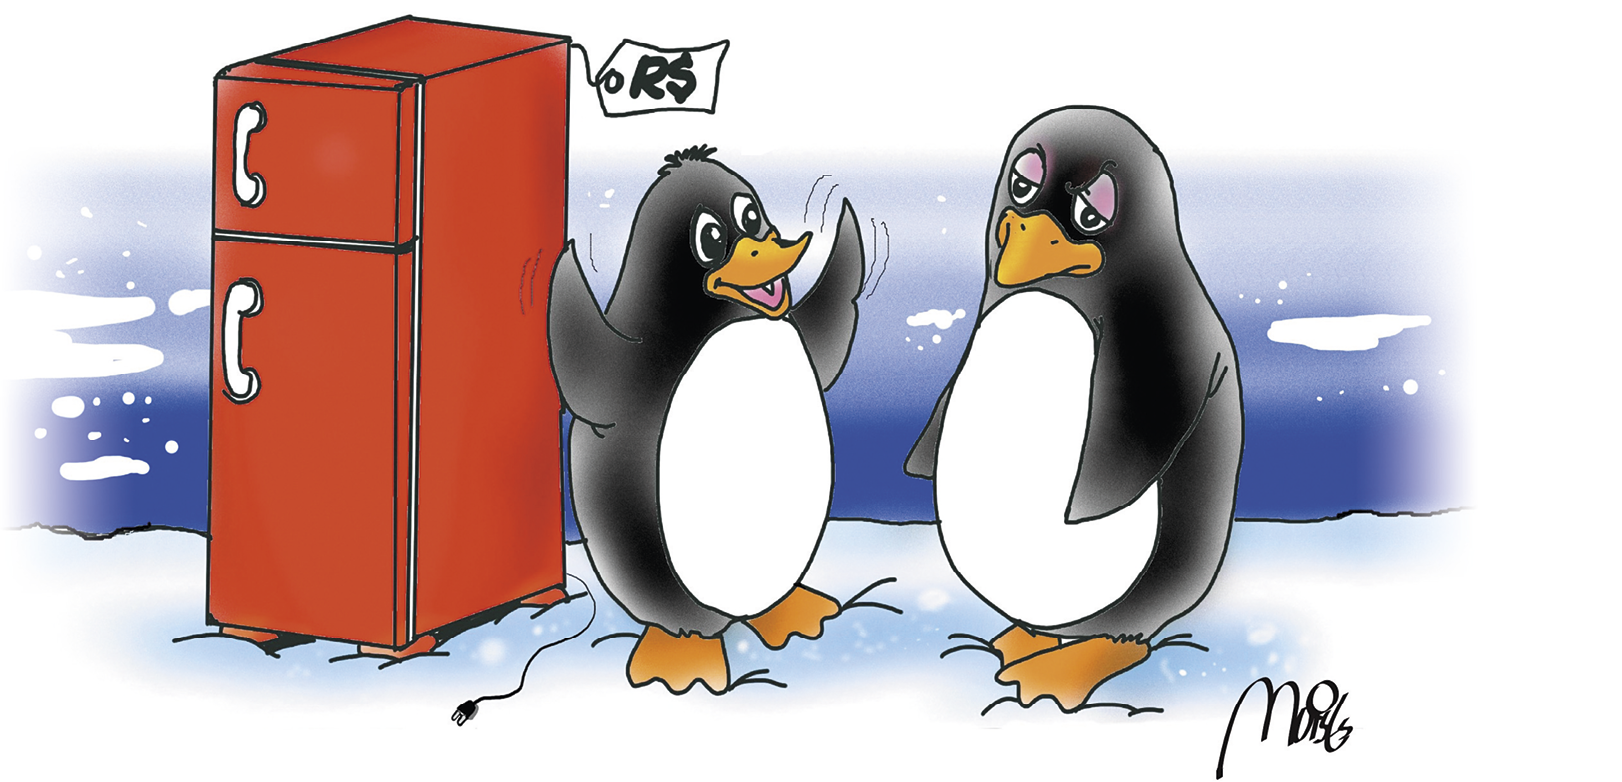 Charge. À esquerda, uma geladeira vermelha com etiqueta na qual está escrito: R$. Ao lado direito, dois pinguins de cor preta e barriga branca. O pinguim da esquerda sorri para o pinguim da direita, que apresenta um olhar triste, a cabeça baixa e a boca fechada.